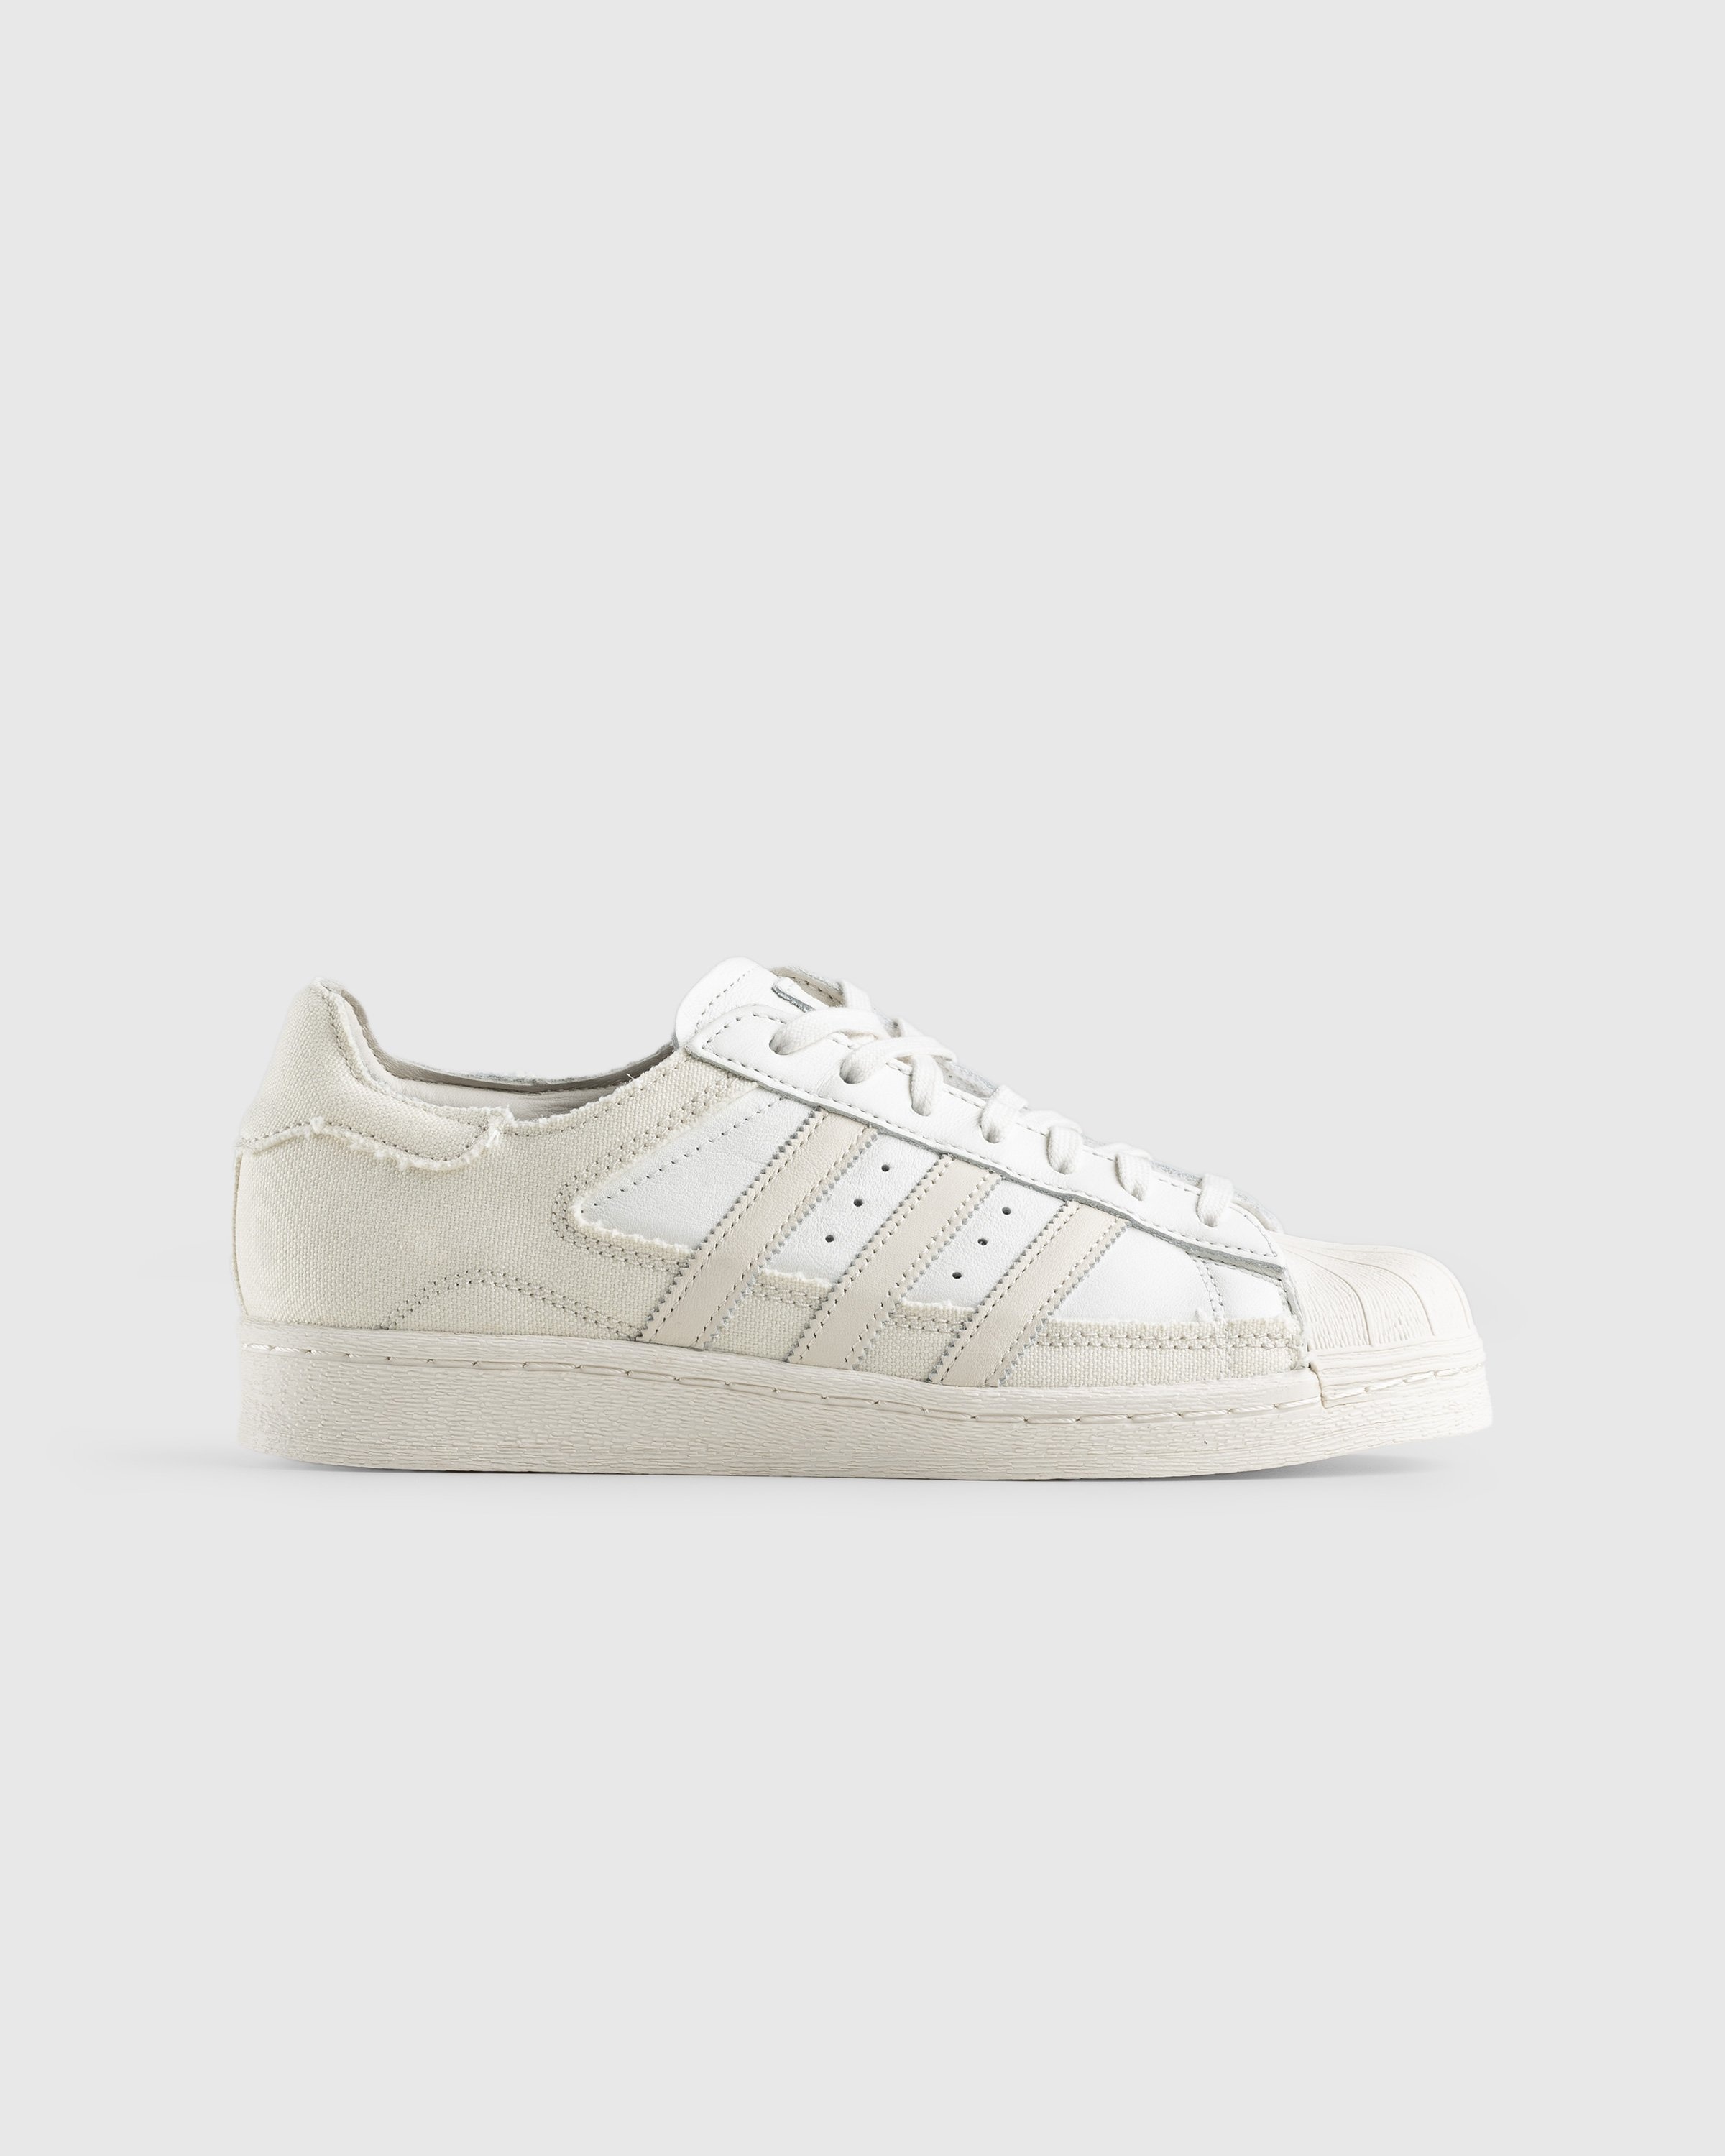 Adidas – Superstar 82 White/Beige | Highsnobiety Shop